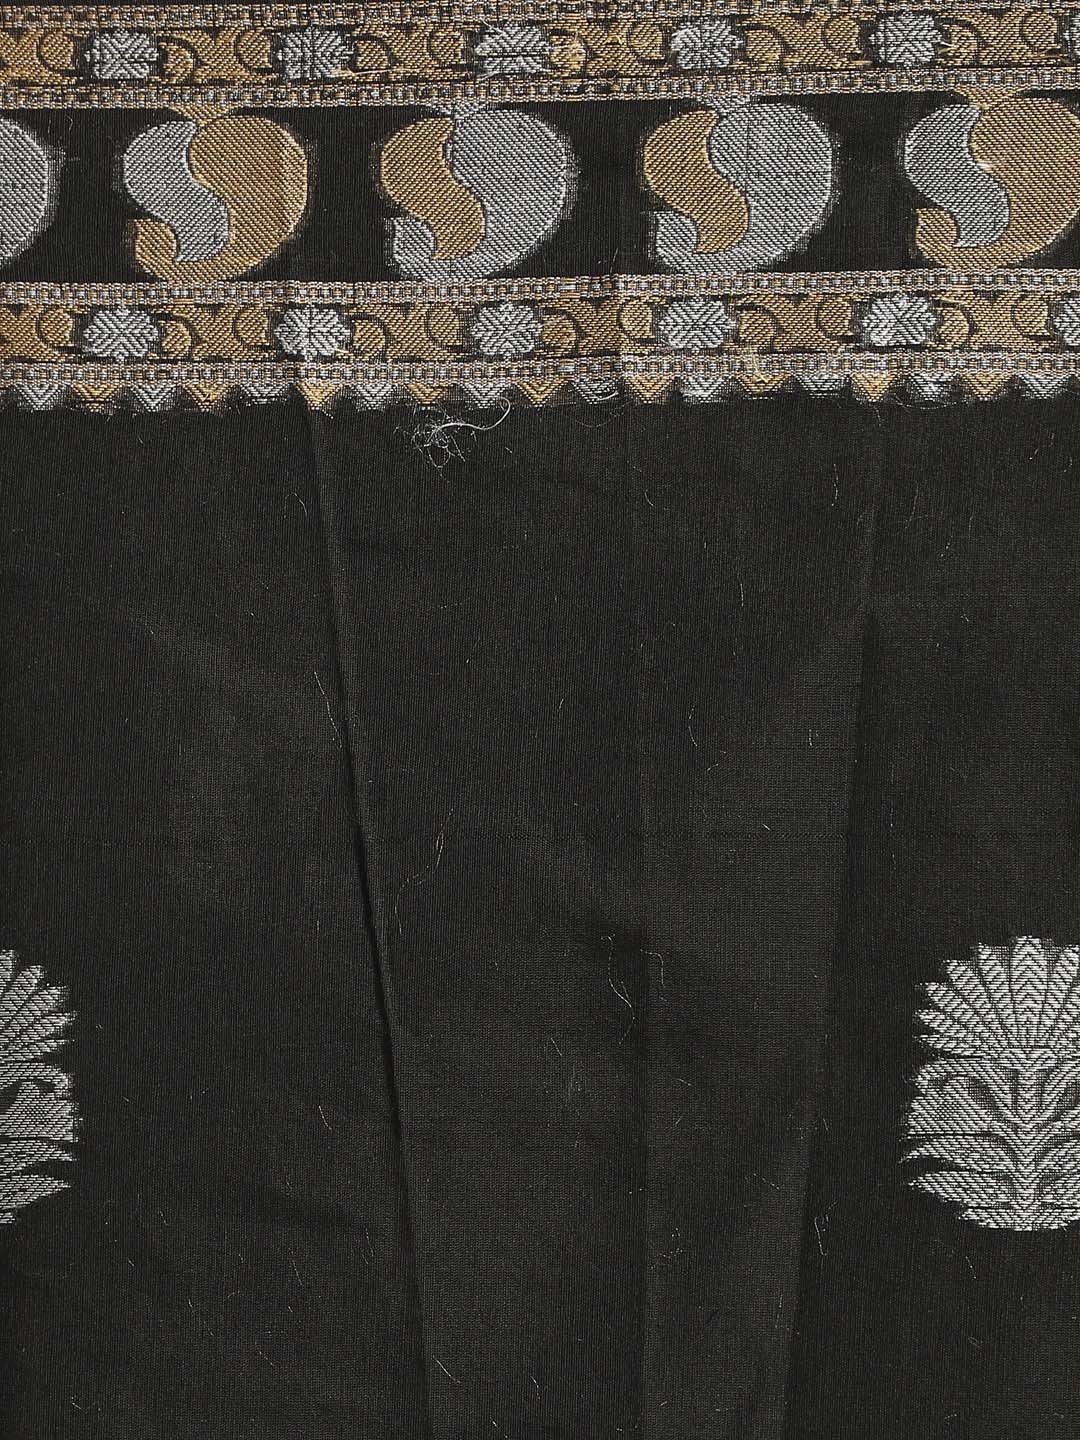 Indethnic Banarasi Black Woven Design Daily Wear Saree - Saree Detail View